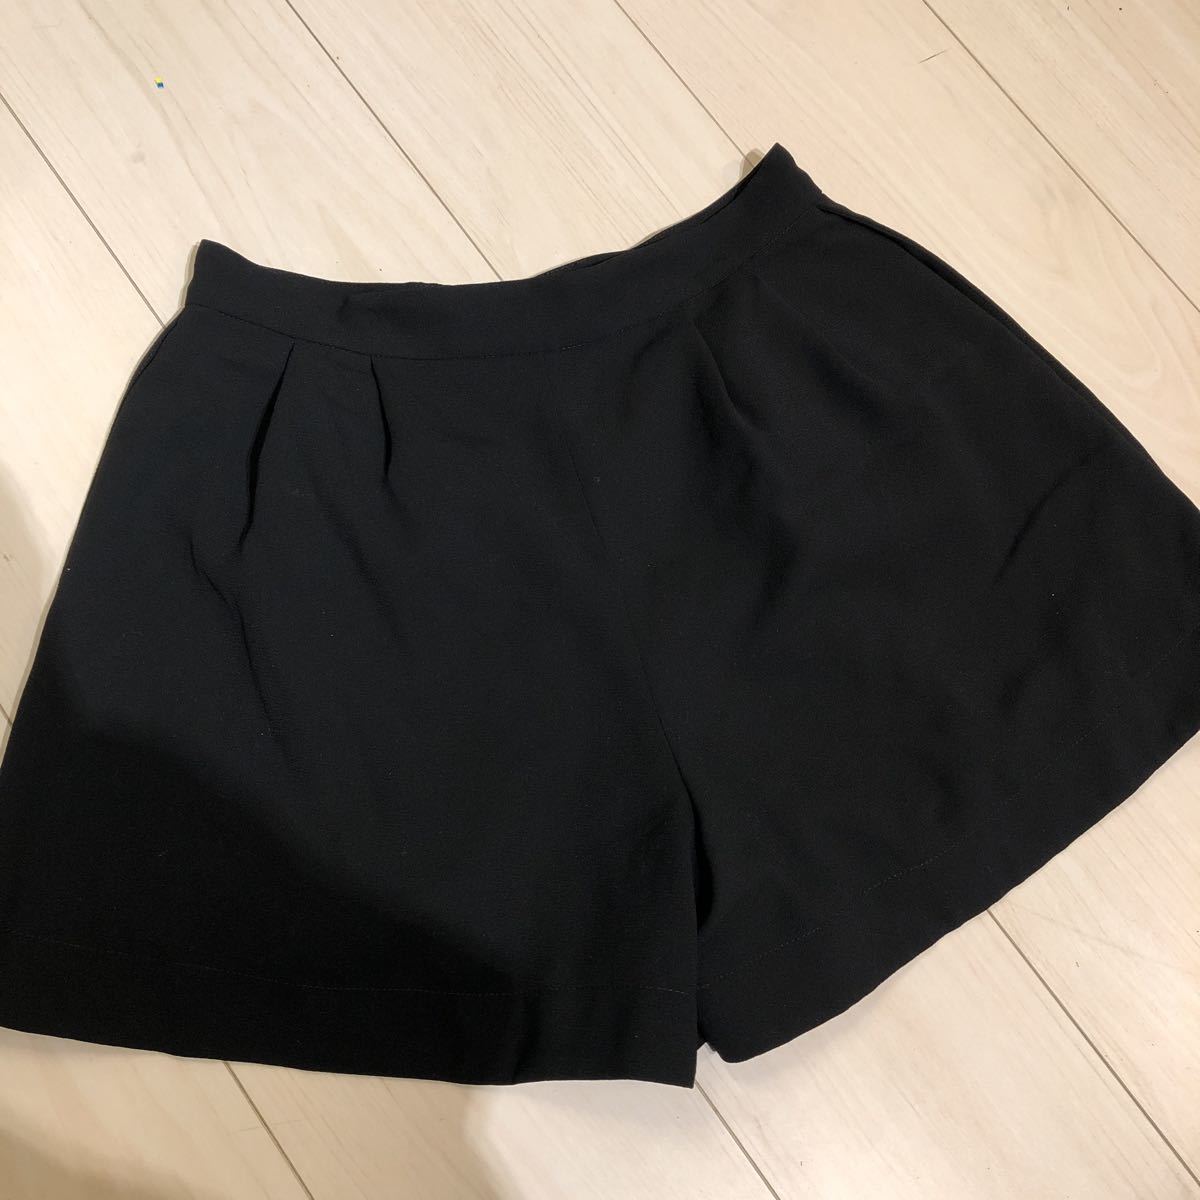 31 Sons de mode( тигр nte Anson du режим ) шорты юбка-брюки черный юбка-брюки юбка 